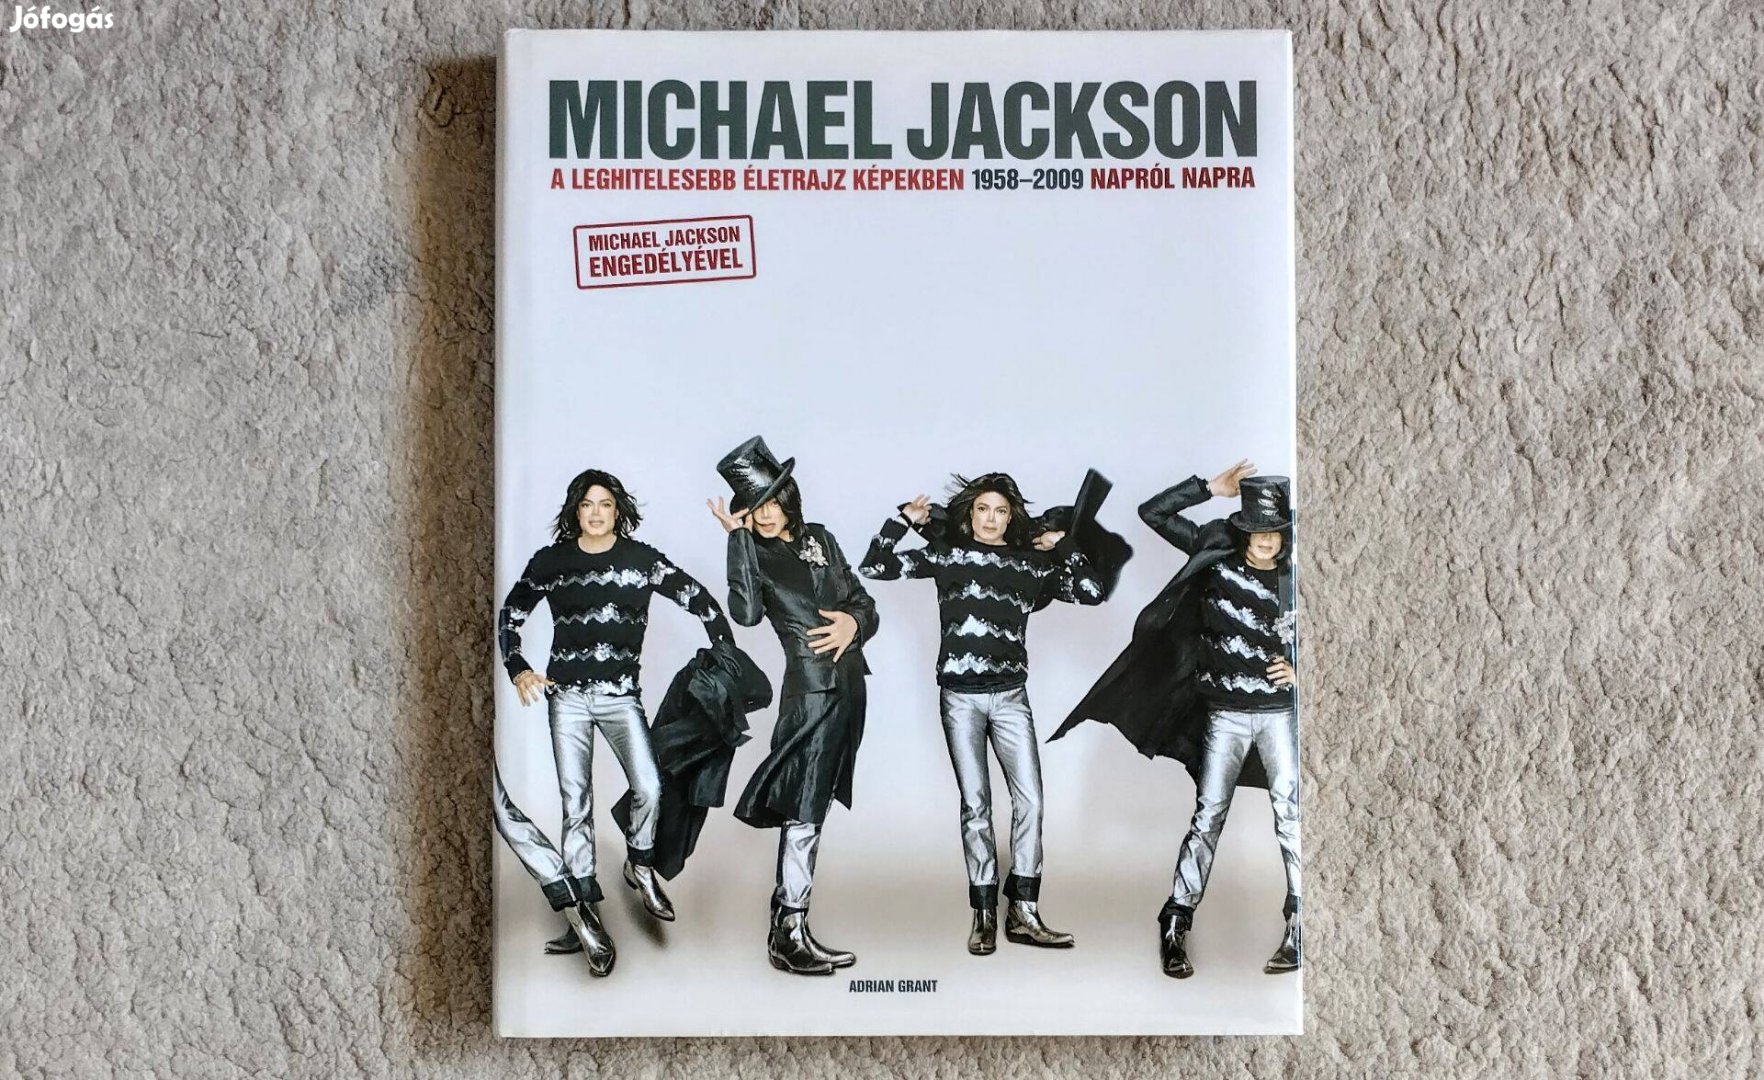 Michael Jackson - Adrian Grant - A leghitelesebb életrajz képekben